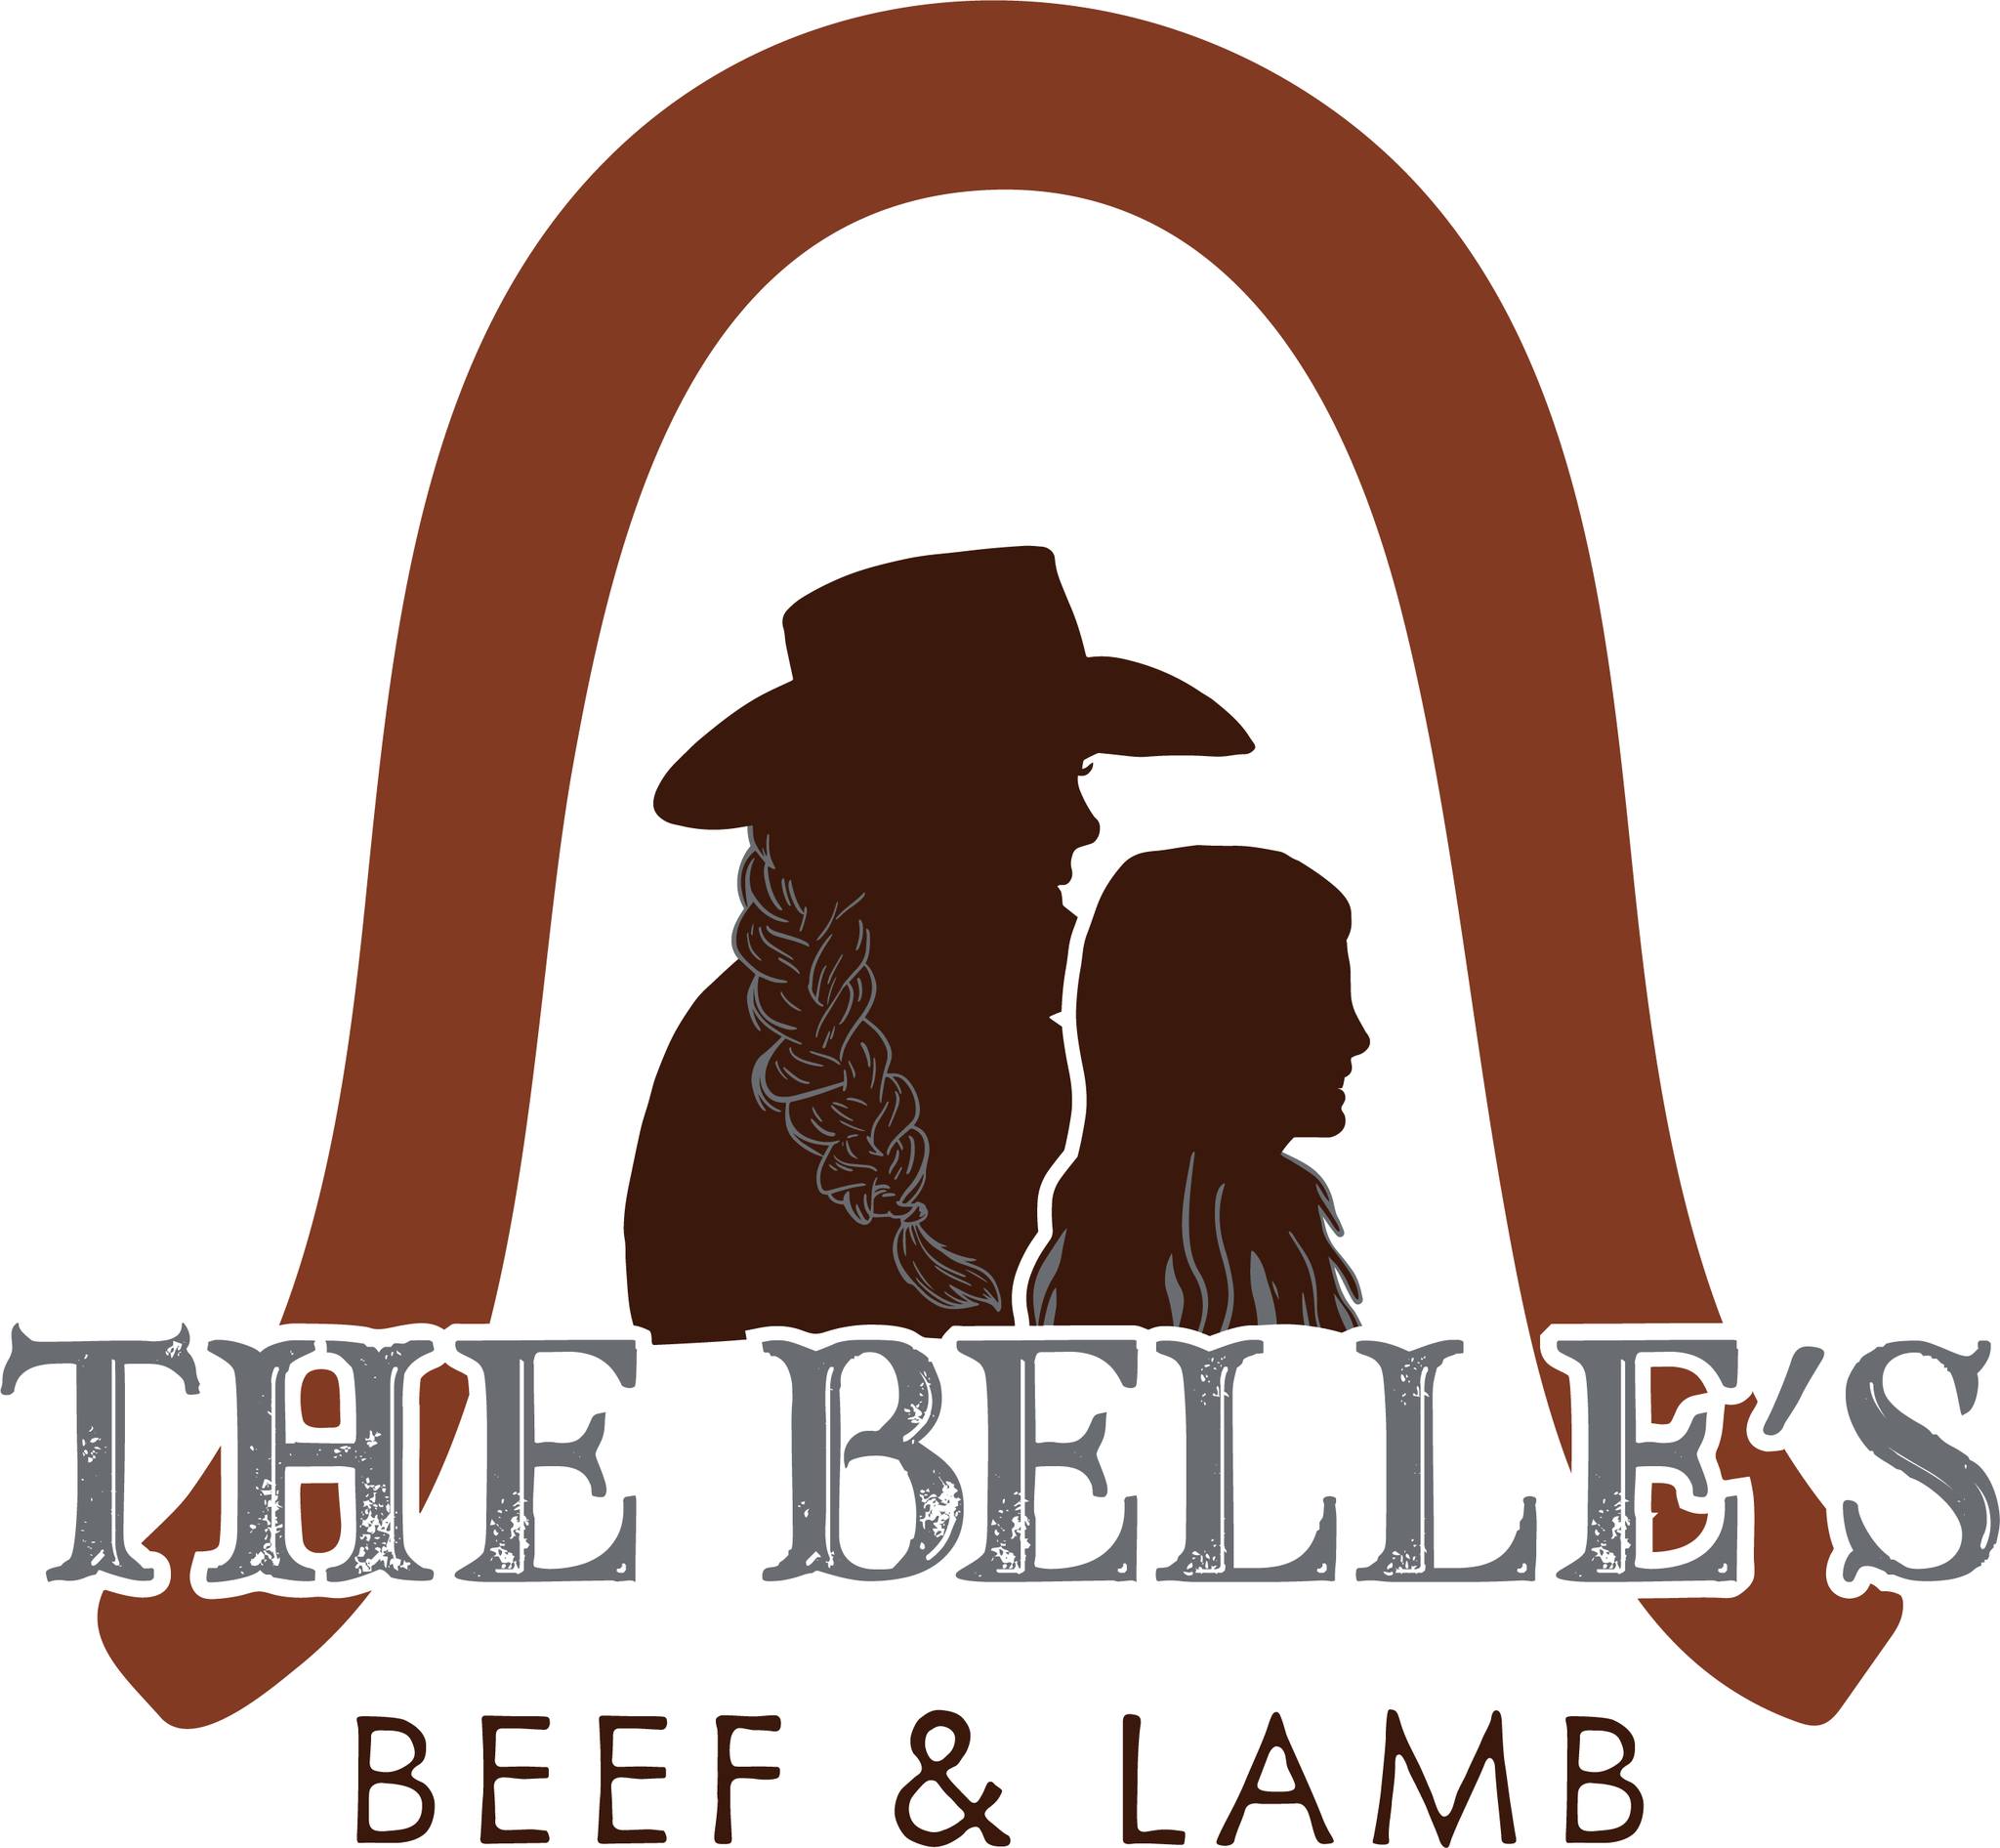 The Belle's Beef & Lamb